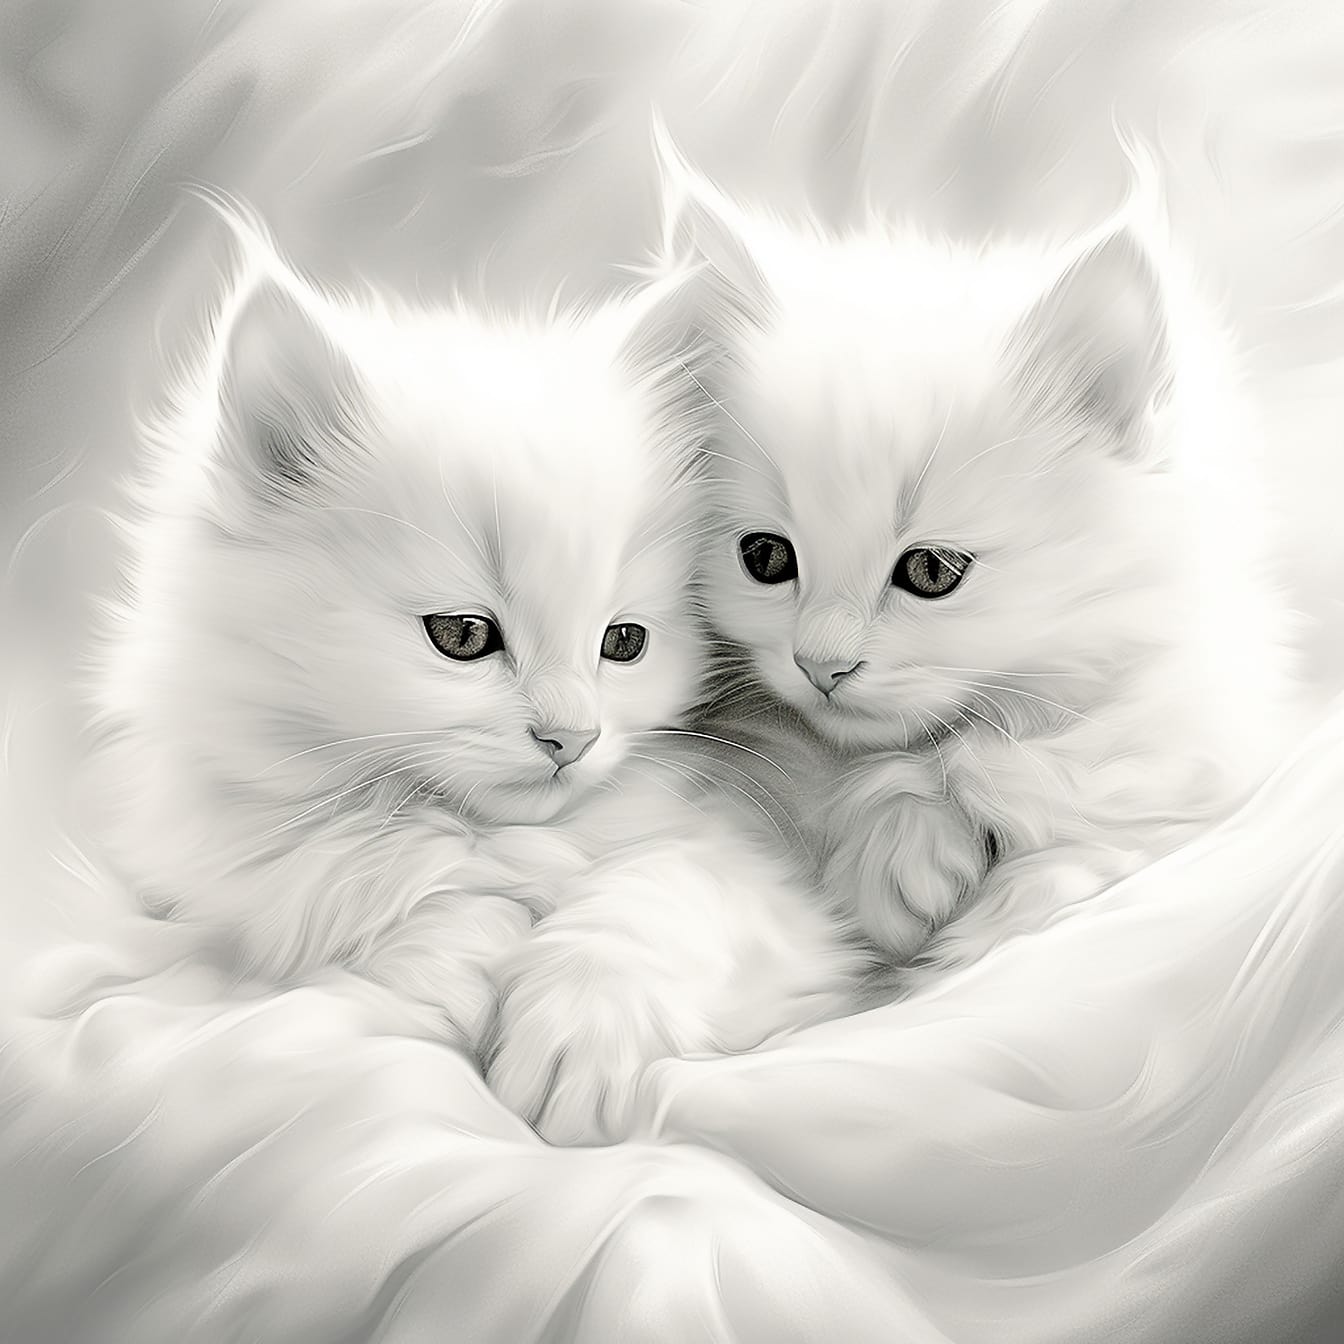 Zwart-wit illustratie van harige witte kittens close-up